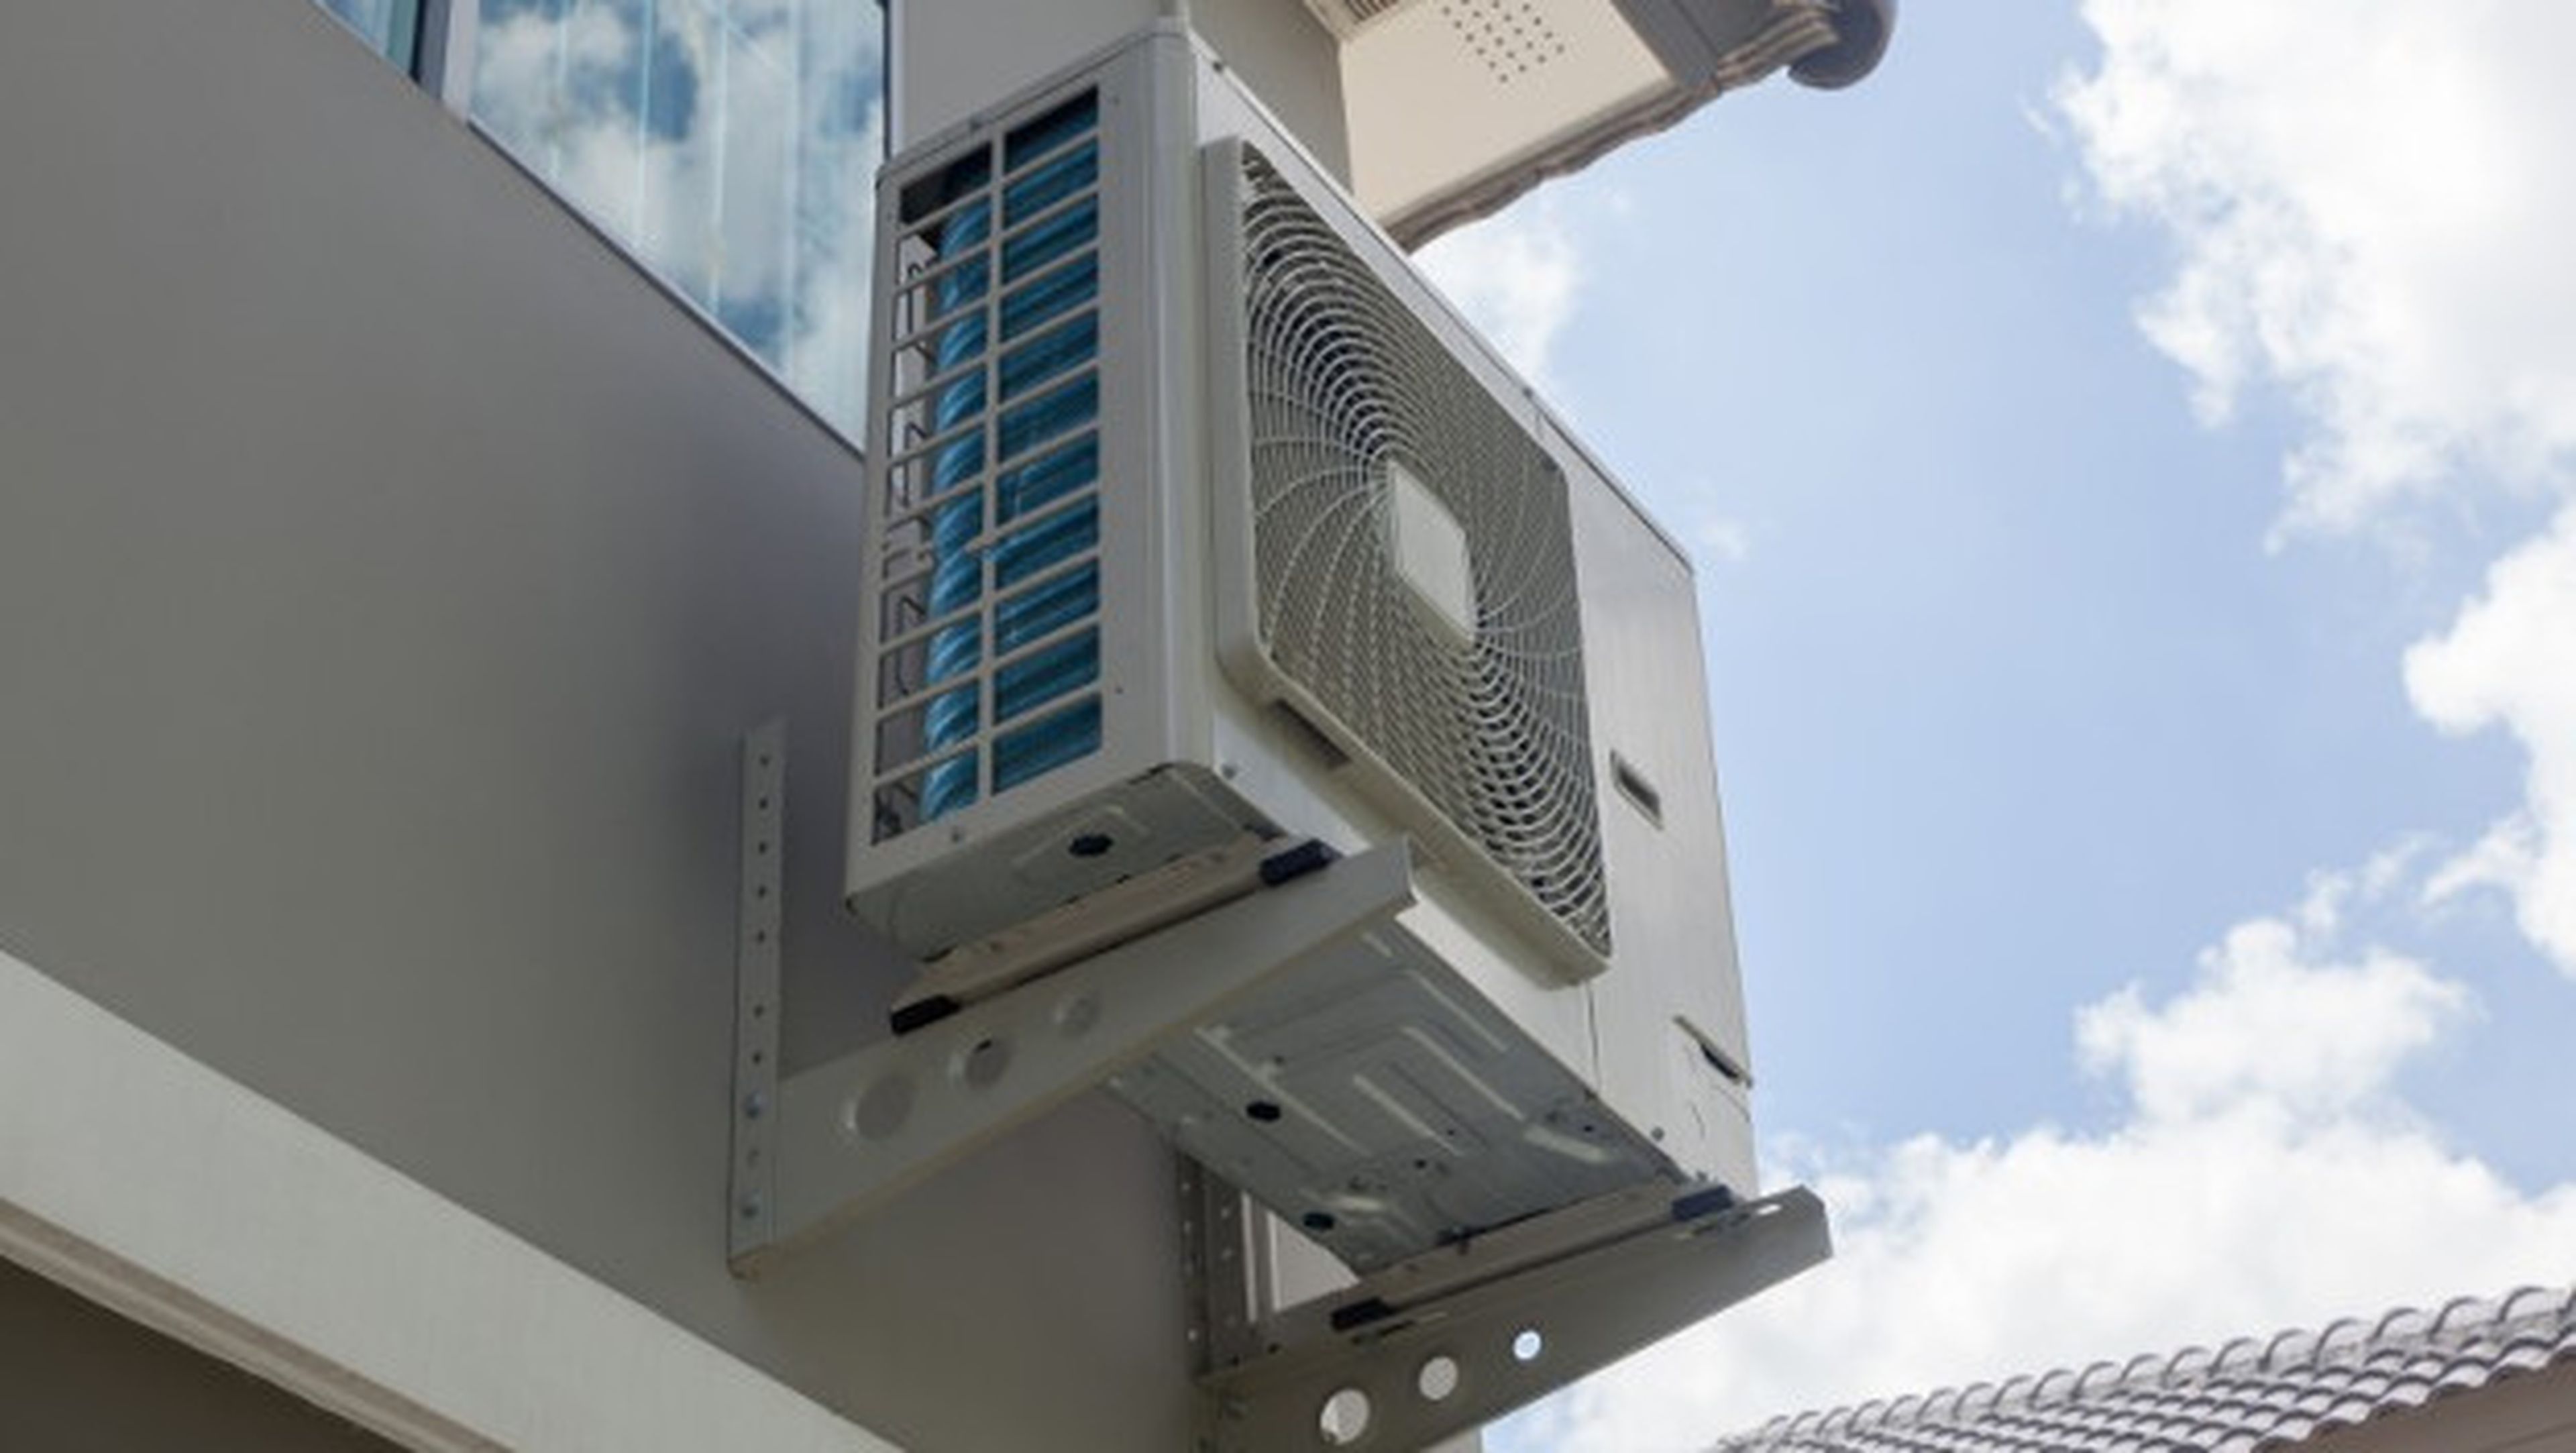 comprador masculino Consejo Necesito permiso para instalar mi aire acondicionado en la fachada? |  Computer Hoy